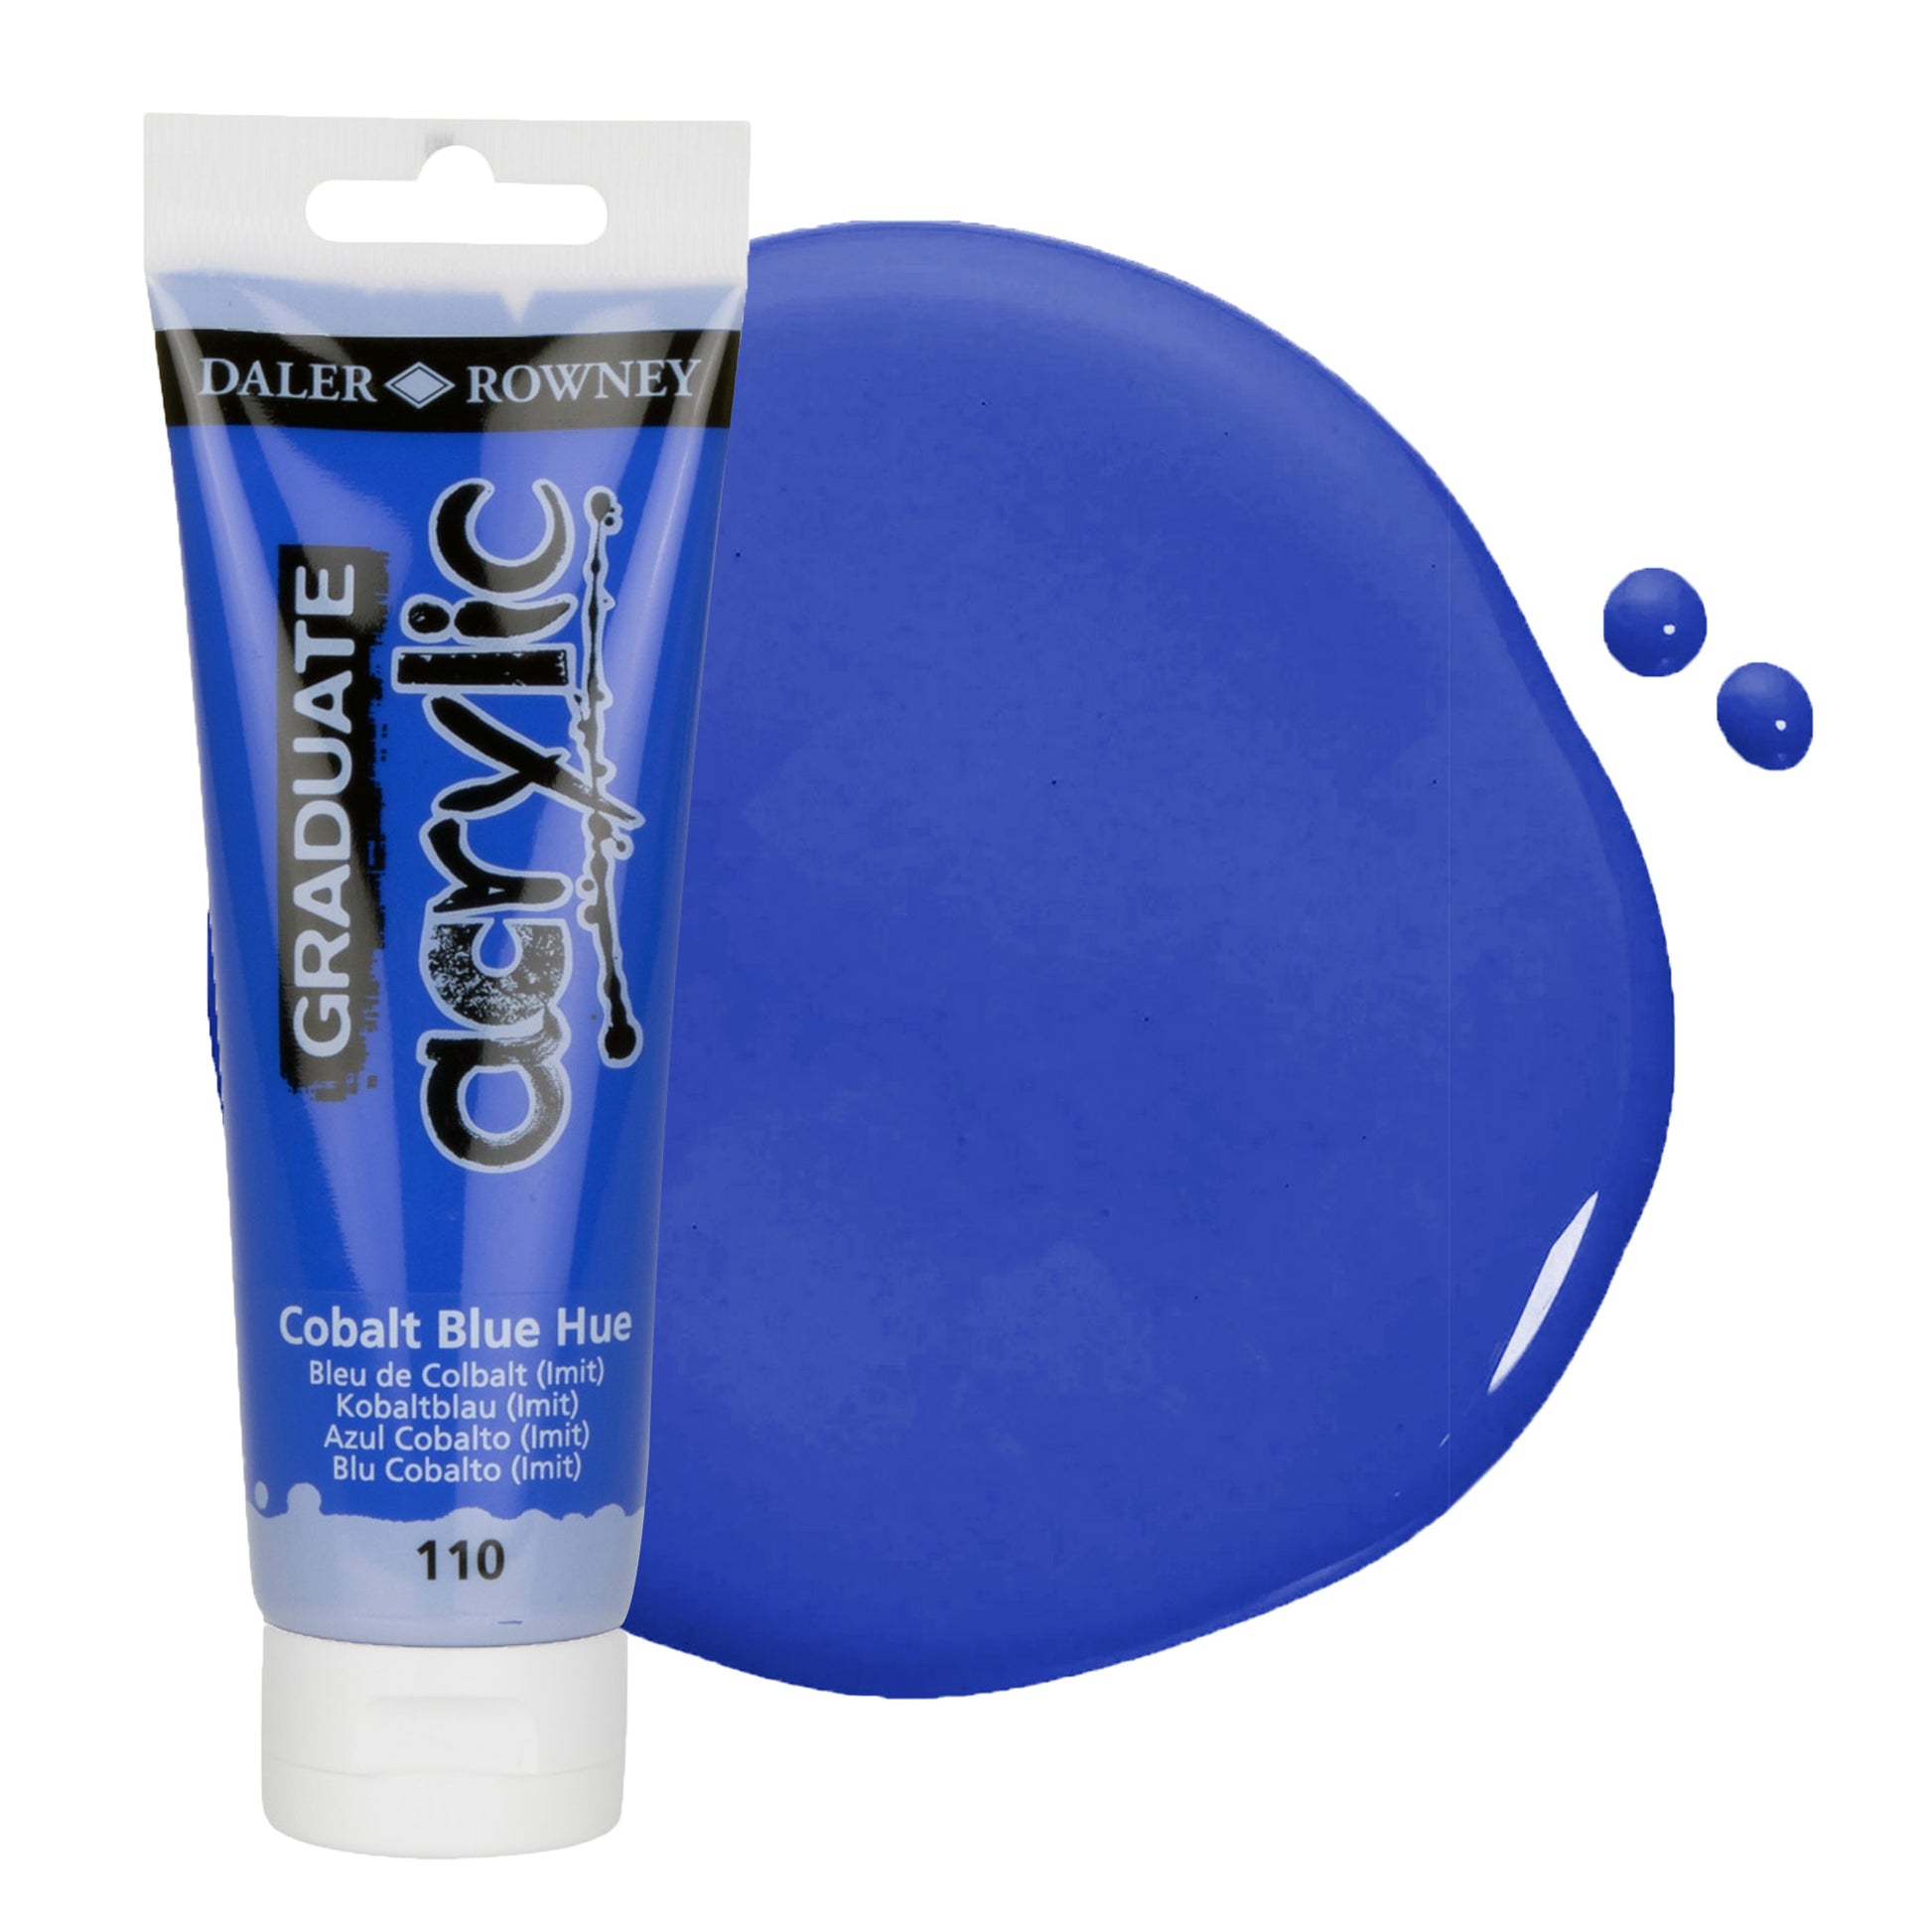 Daler & Rowney beginner's cobalt blue acrylic paint tube